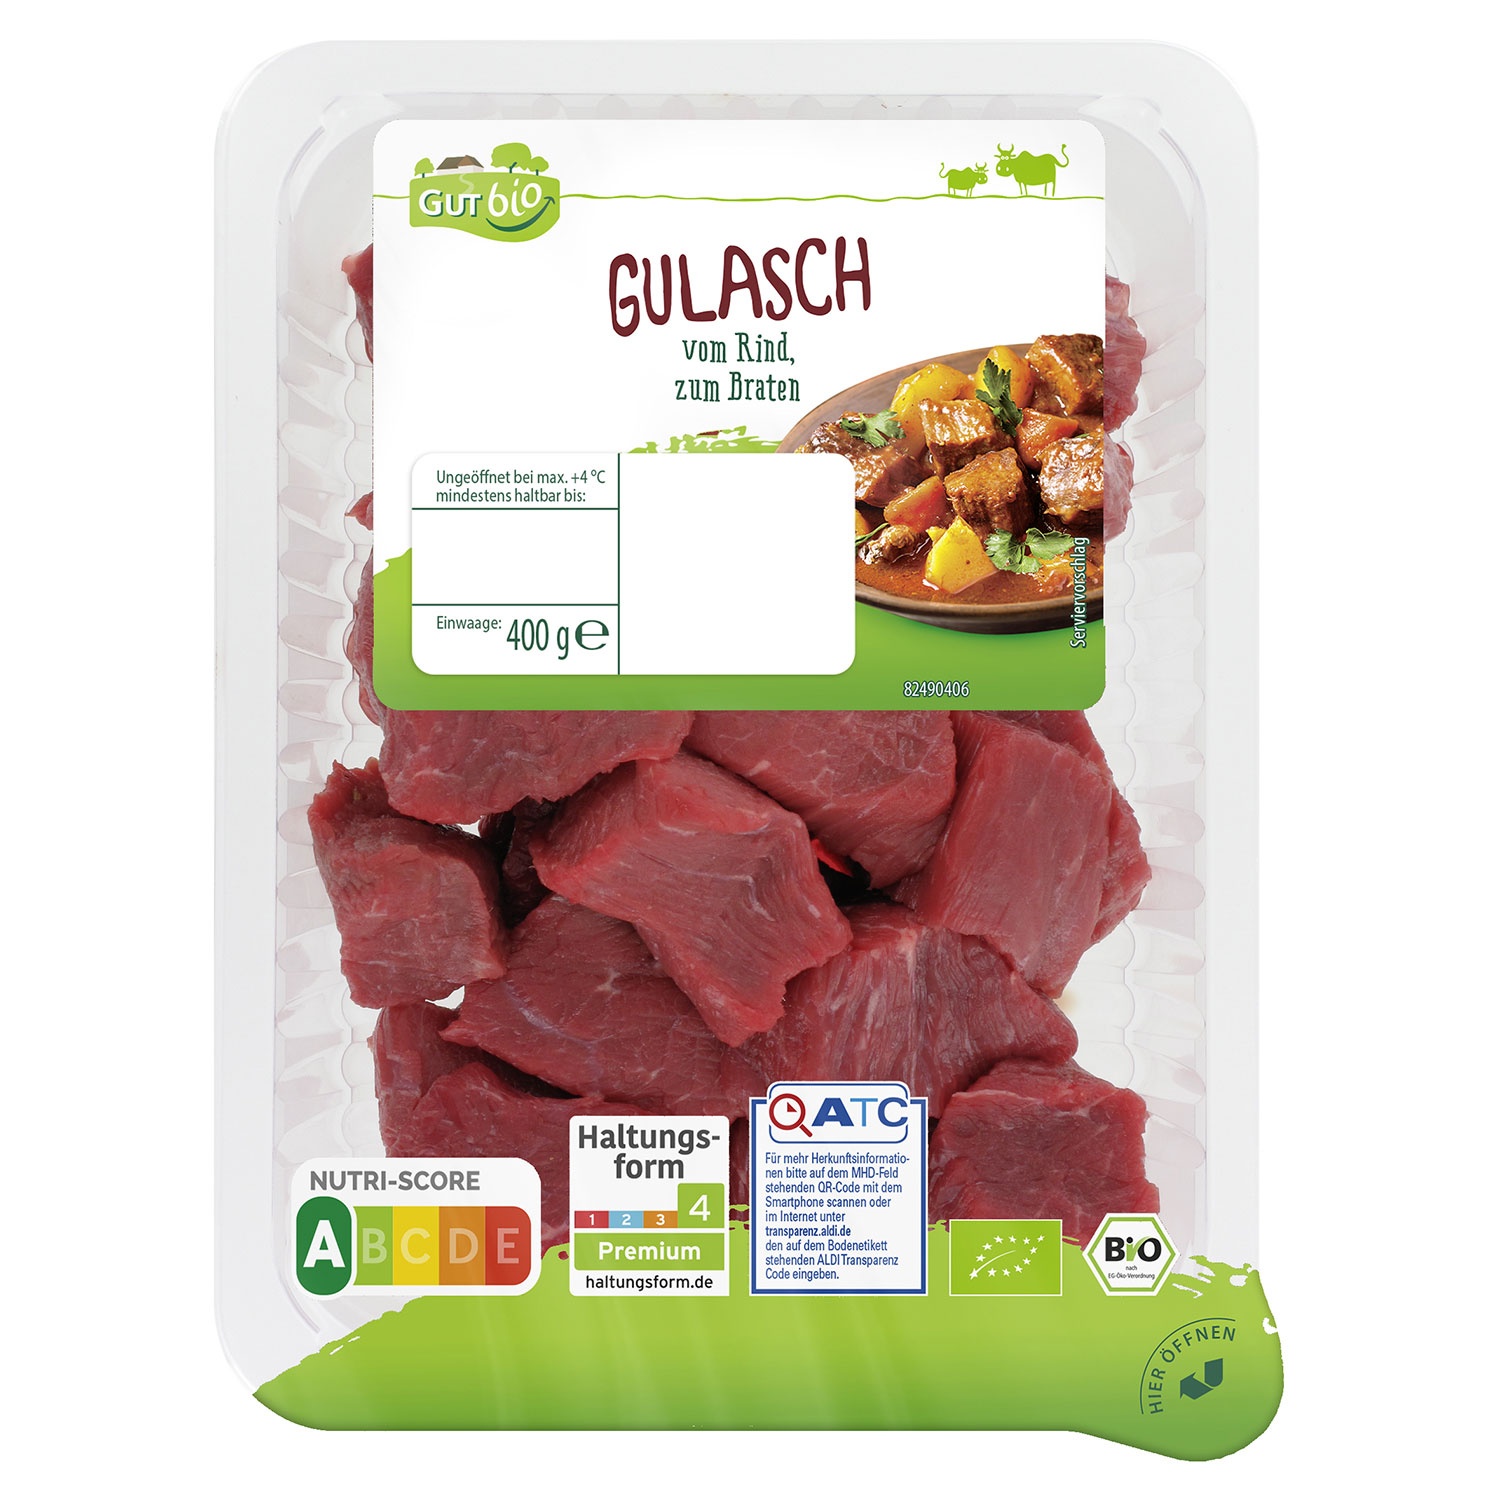 GUT BIO Bio-Rinder-Gulasch 400 g